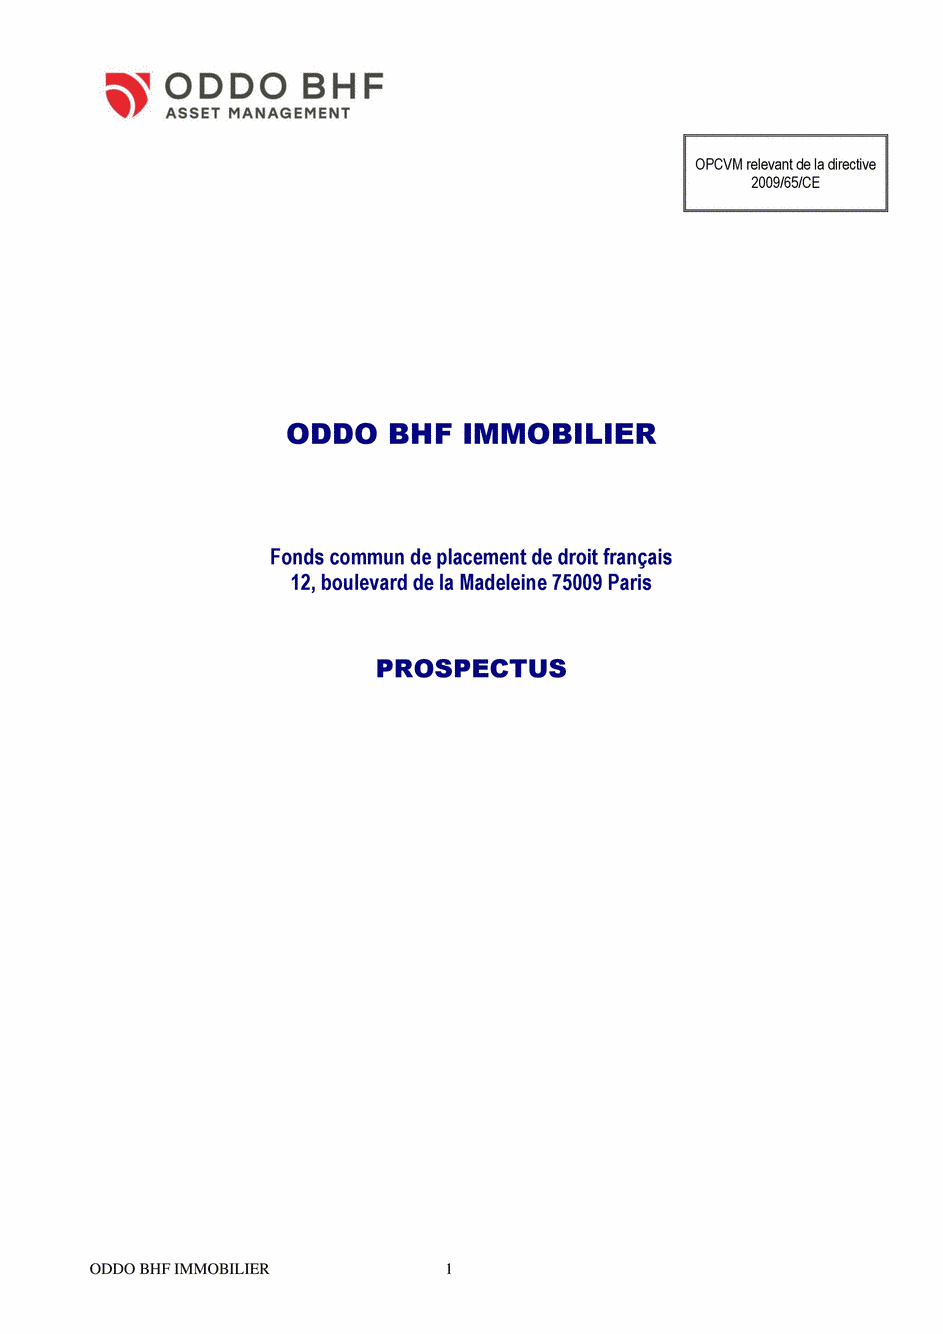 Prospectus ODDO BHF IMMOBILIER CR-EUR - 15/07/2020 - Français